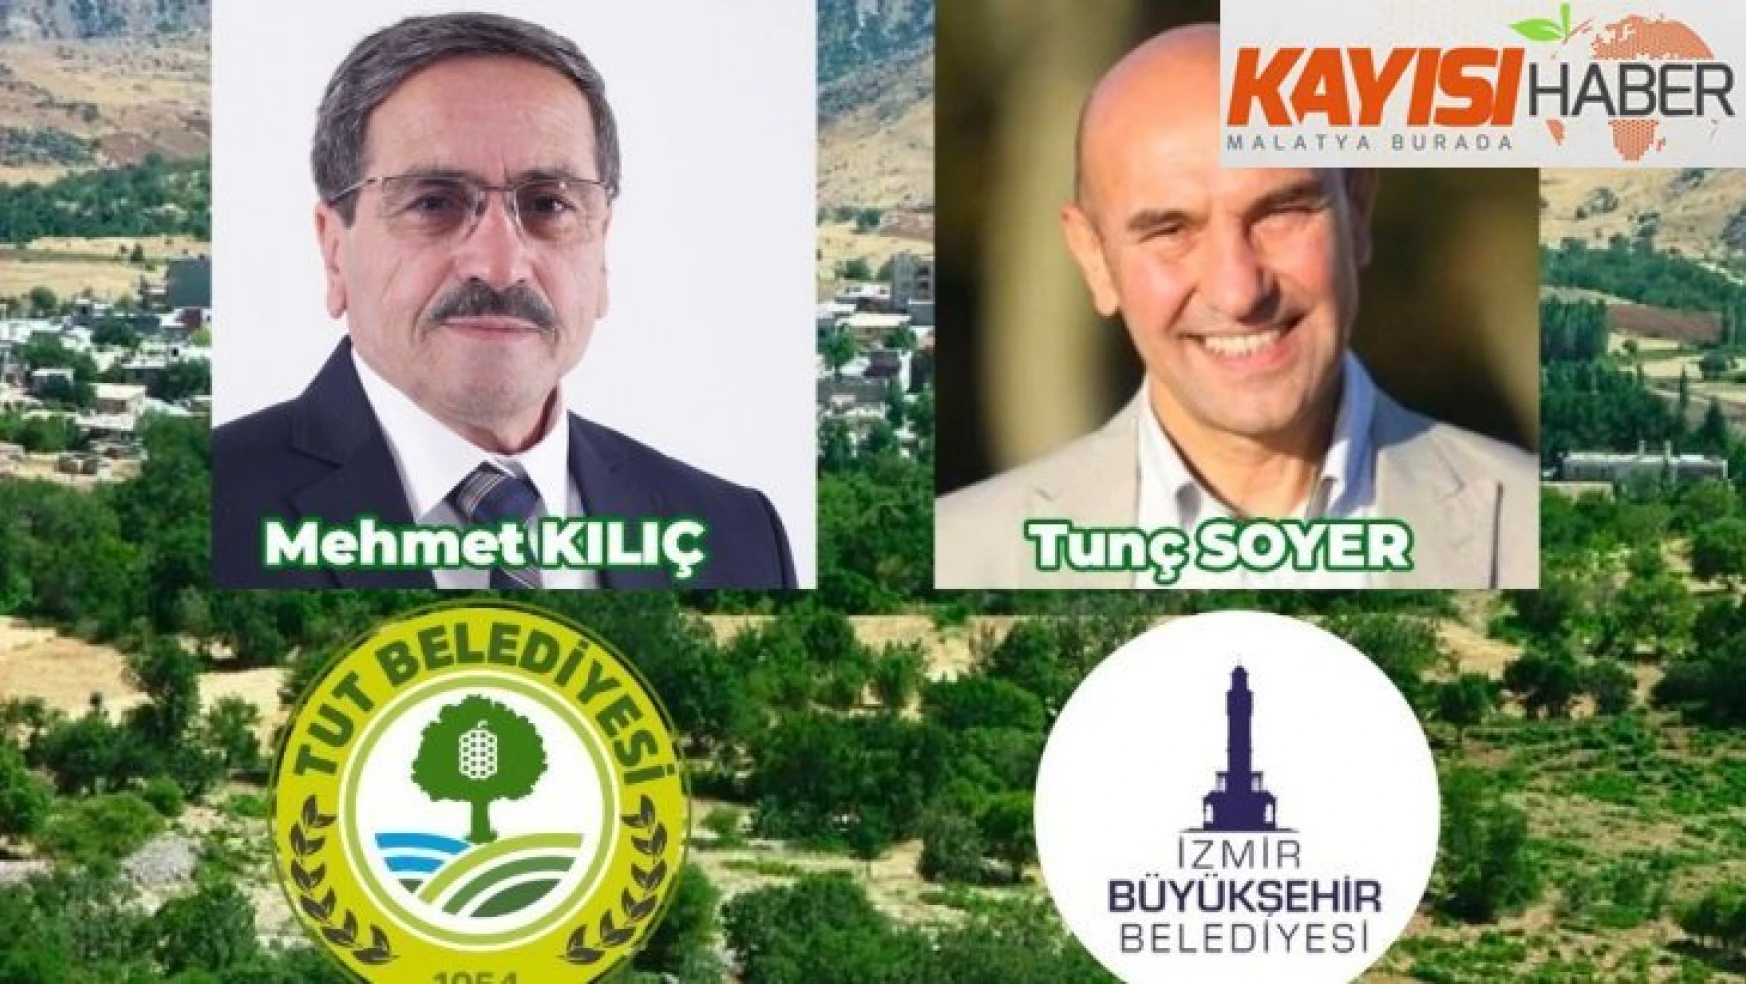 Tut belediyesi ile İzmir Büyükşehir Belediyesi kardeş belediye seçildi